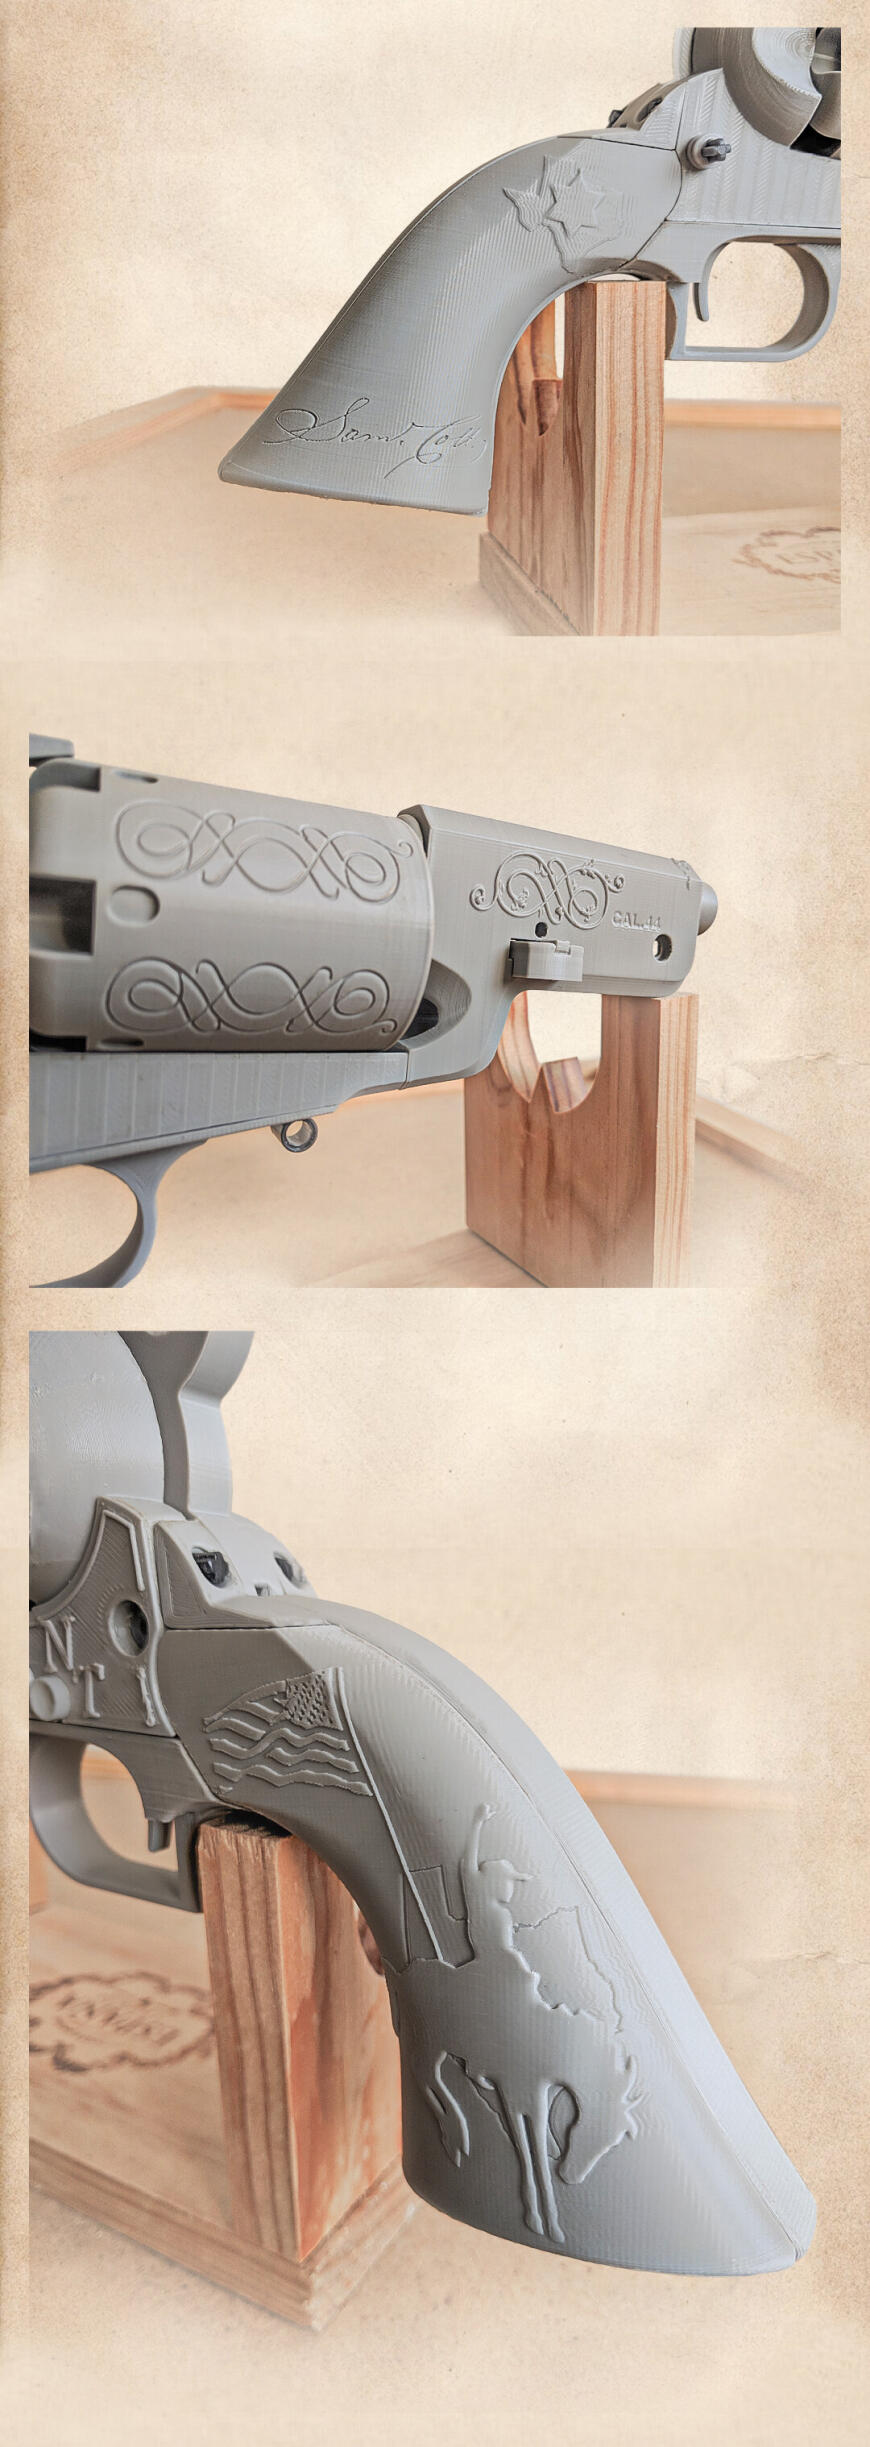 Рабочая модель револьвера Colt Walker 1874